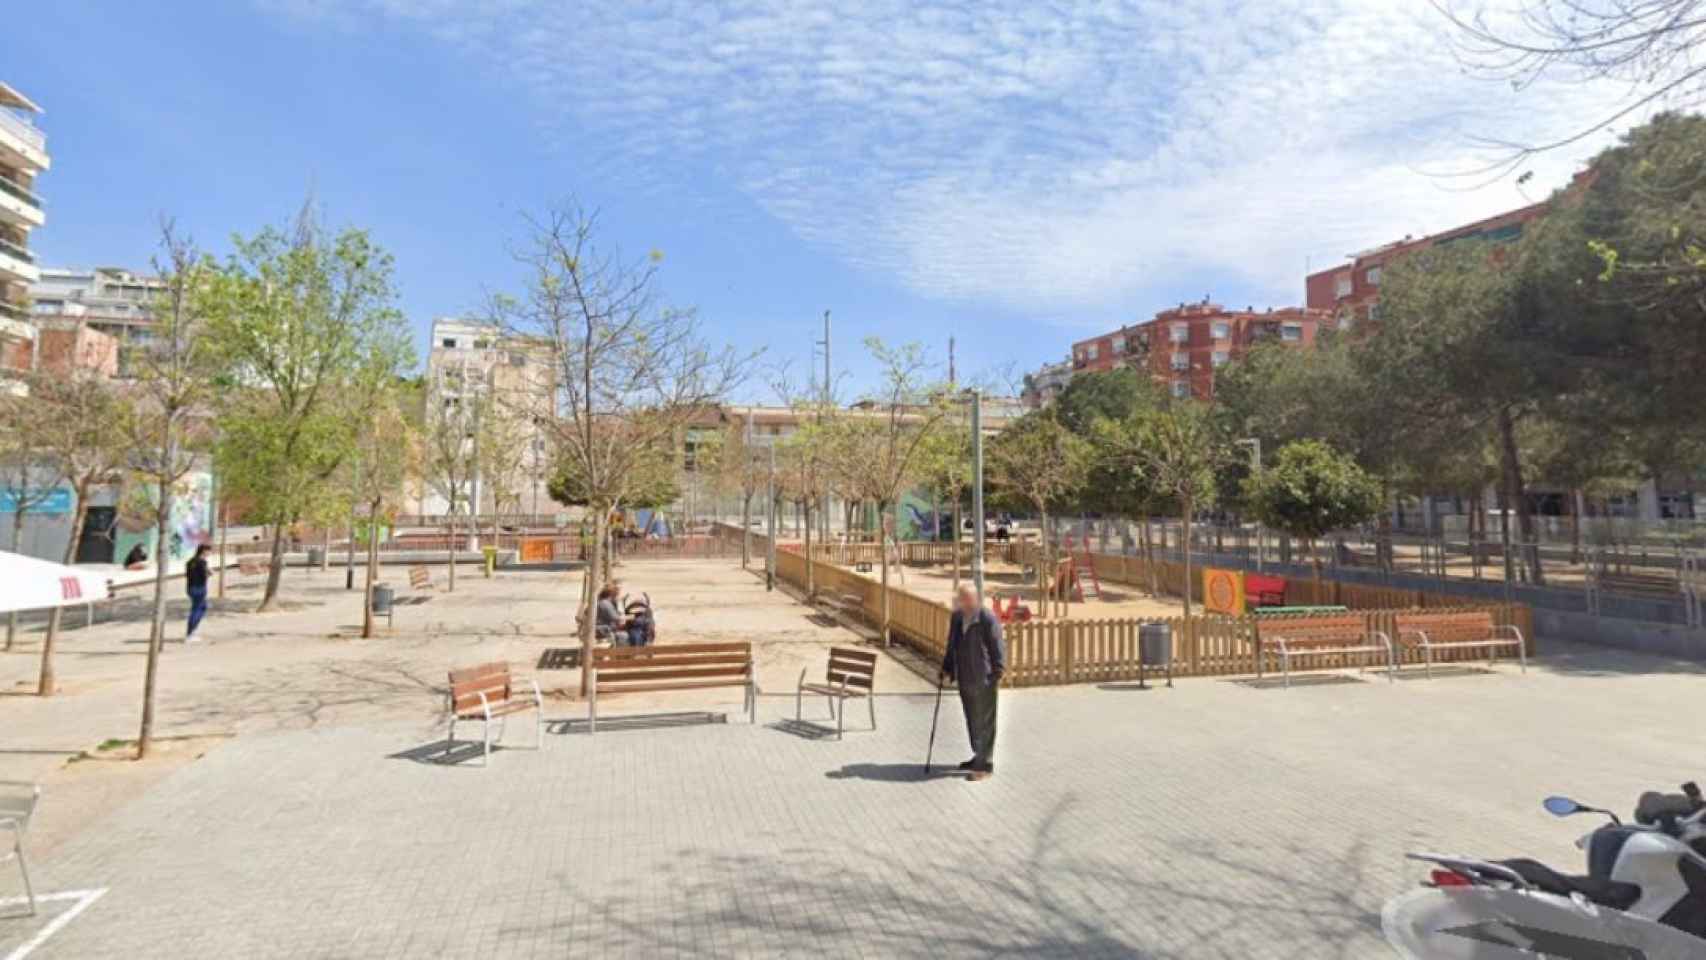 El parque de la Serpiente de L'Hospitalet de Llobregat, donde fue apuñalado un hombre en un ajuste de cuentas entre bandas latinas / GOOGLE MAPS